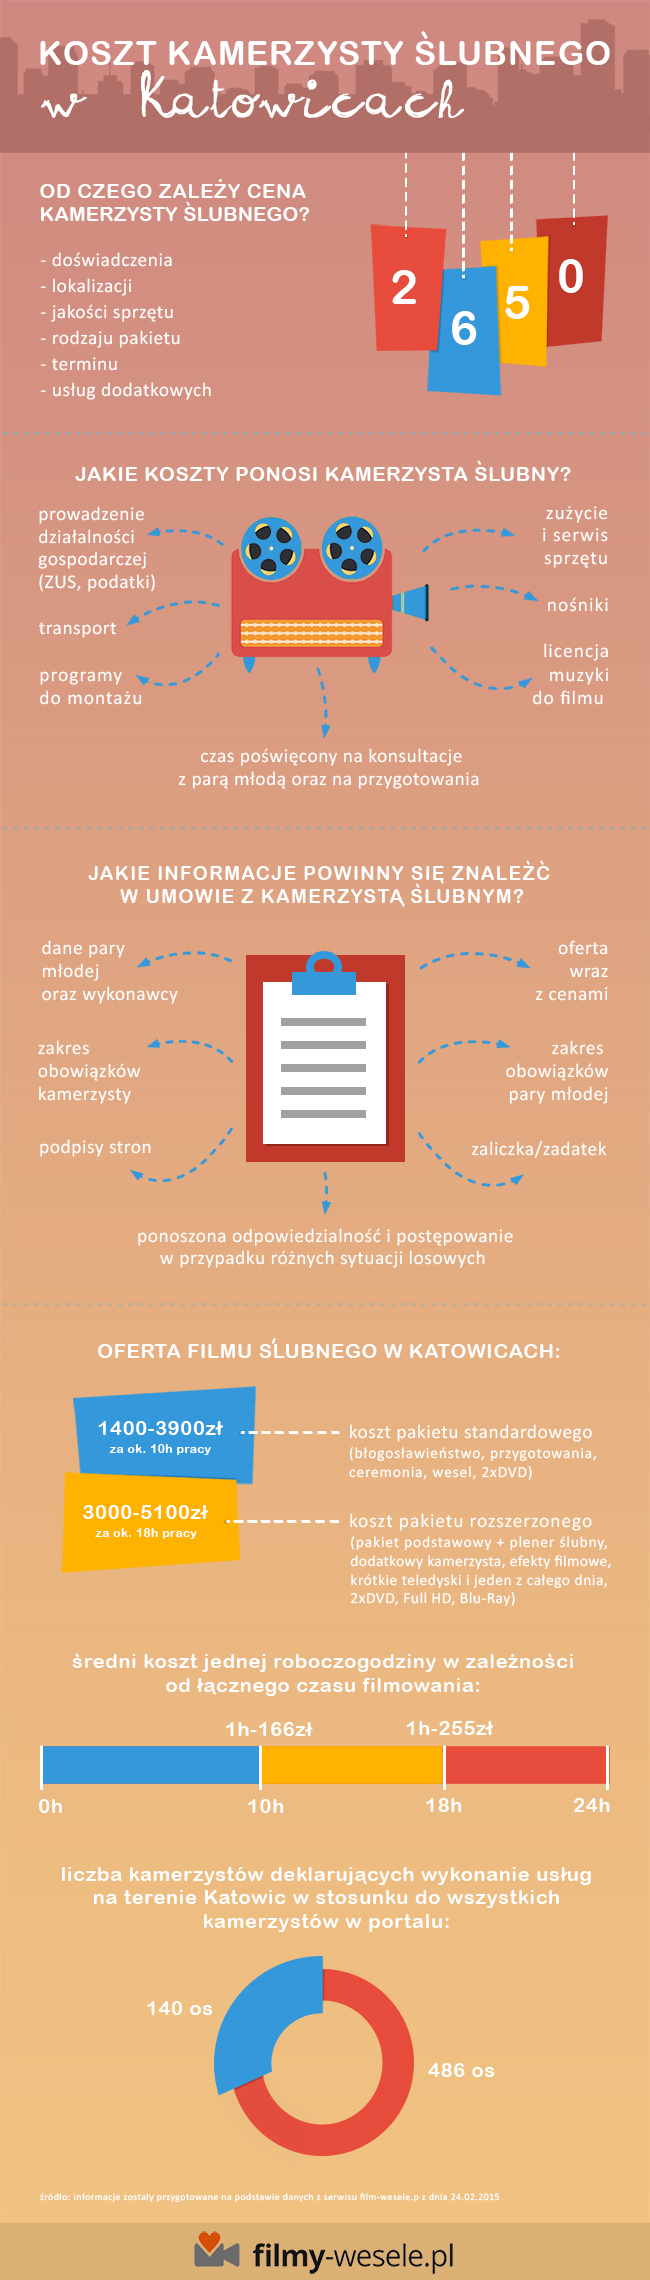 Koszt kamerzysty ślubnego w Katowicach